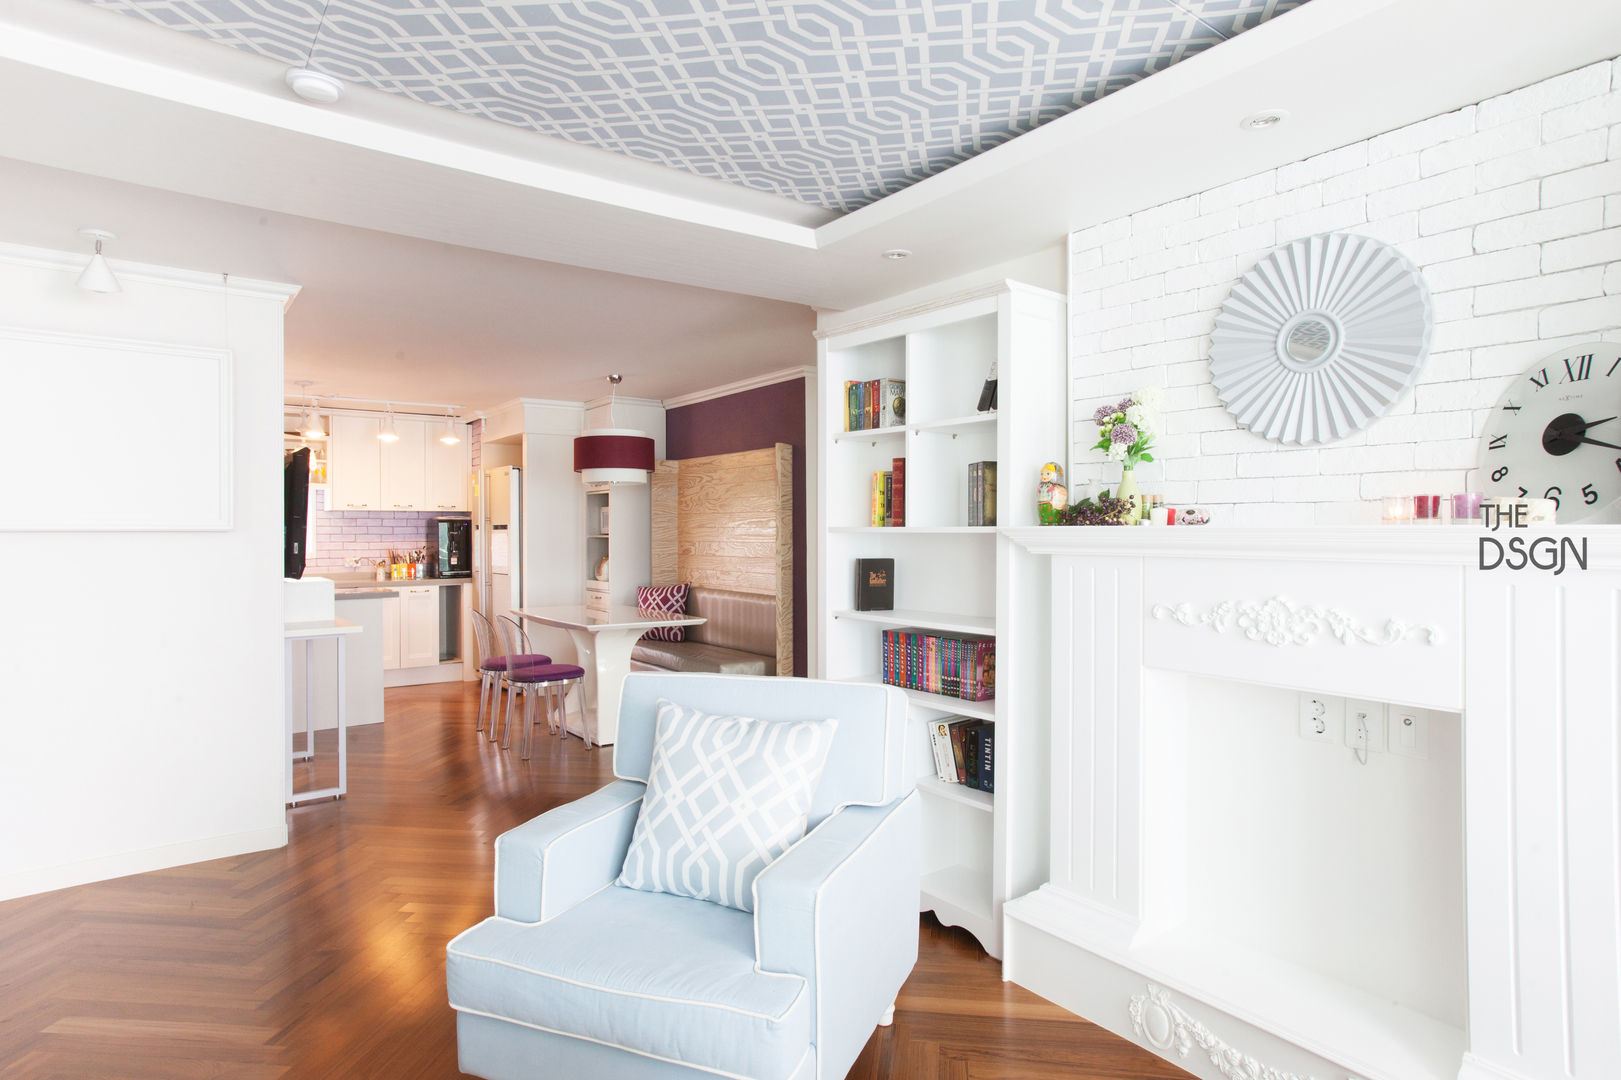 컬러와 패턴이 살아있는 집, 더디자인 the dsgn 더디자인 the dsgn Eclectic style living room